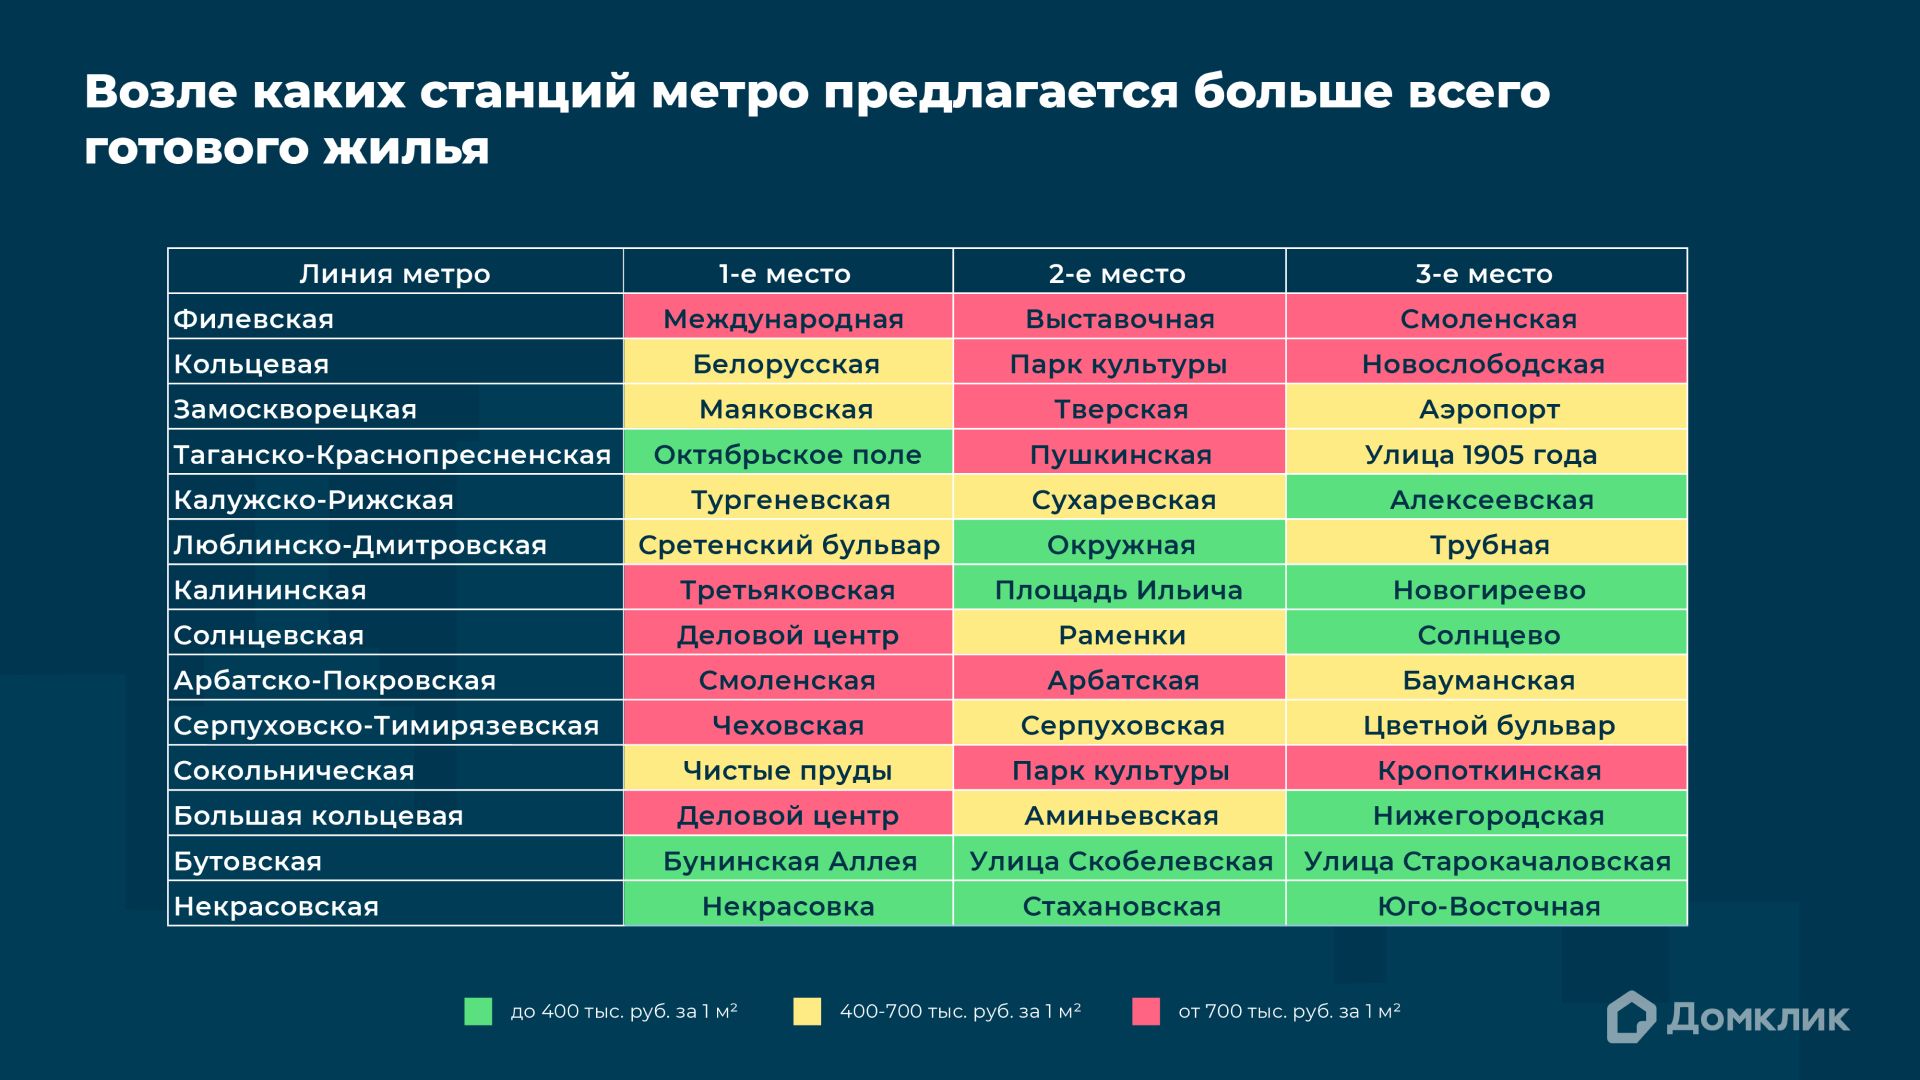 Рейтинг линий московского метро по среднему объему предложения готового жилья на станцию в декабре 2023 года (максимальное расстояние между лотом и станцией – 10 минут пешком). Топ-3 станций с наибольшим объемом предложения по каждой линии московского метро. Зеленым цветом отмечены станции, возле которых квадрат готового жилья стоит до 400 тыс. руб., желтым – от 400 до 700 тыс., красным – более 700 тыс. Данные Домклик